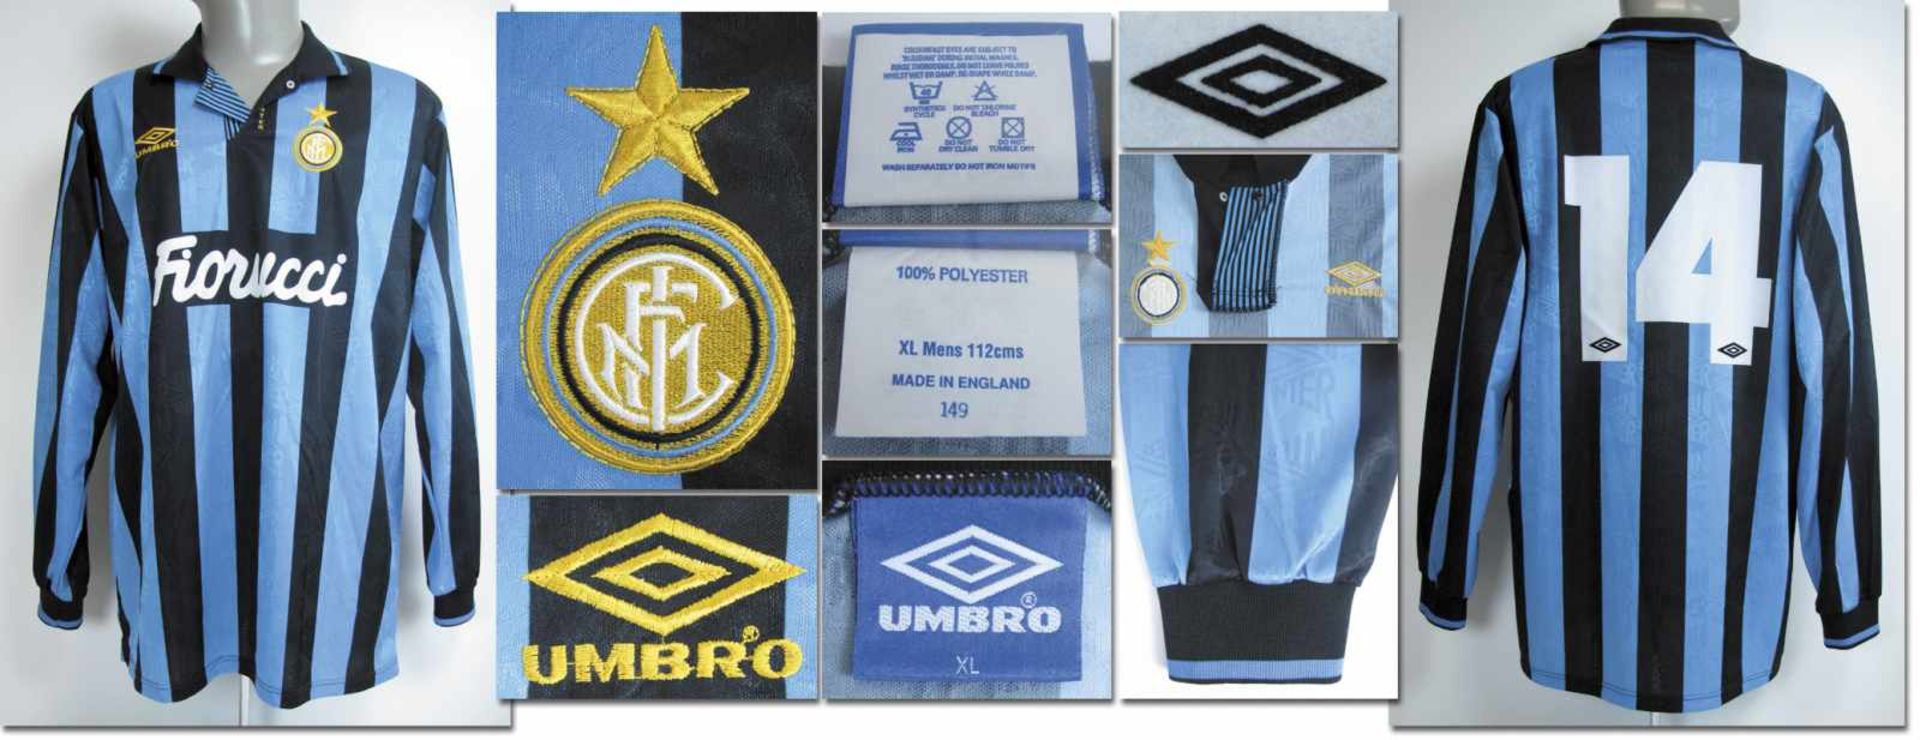 match worn football shirt Inter Milan 1993/94 - Original match worn shirt Inter Milan with number 4.